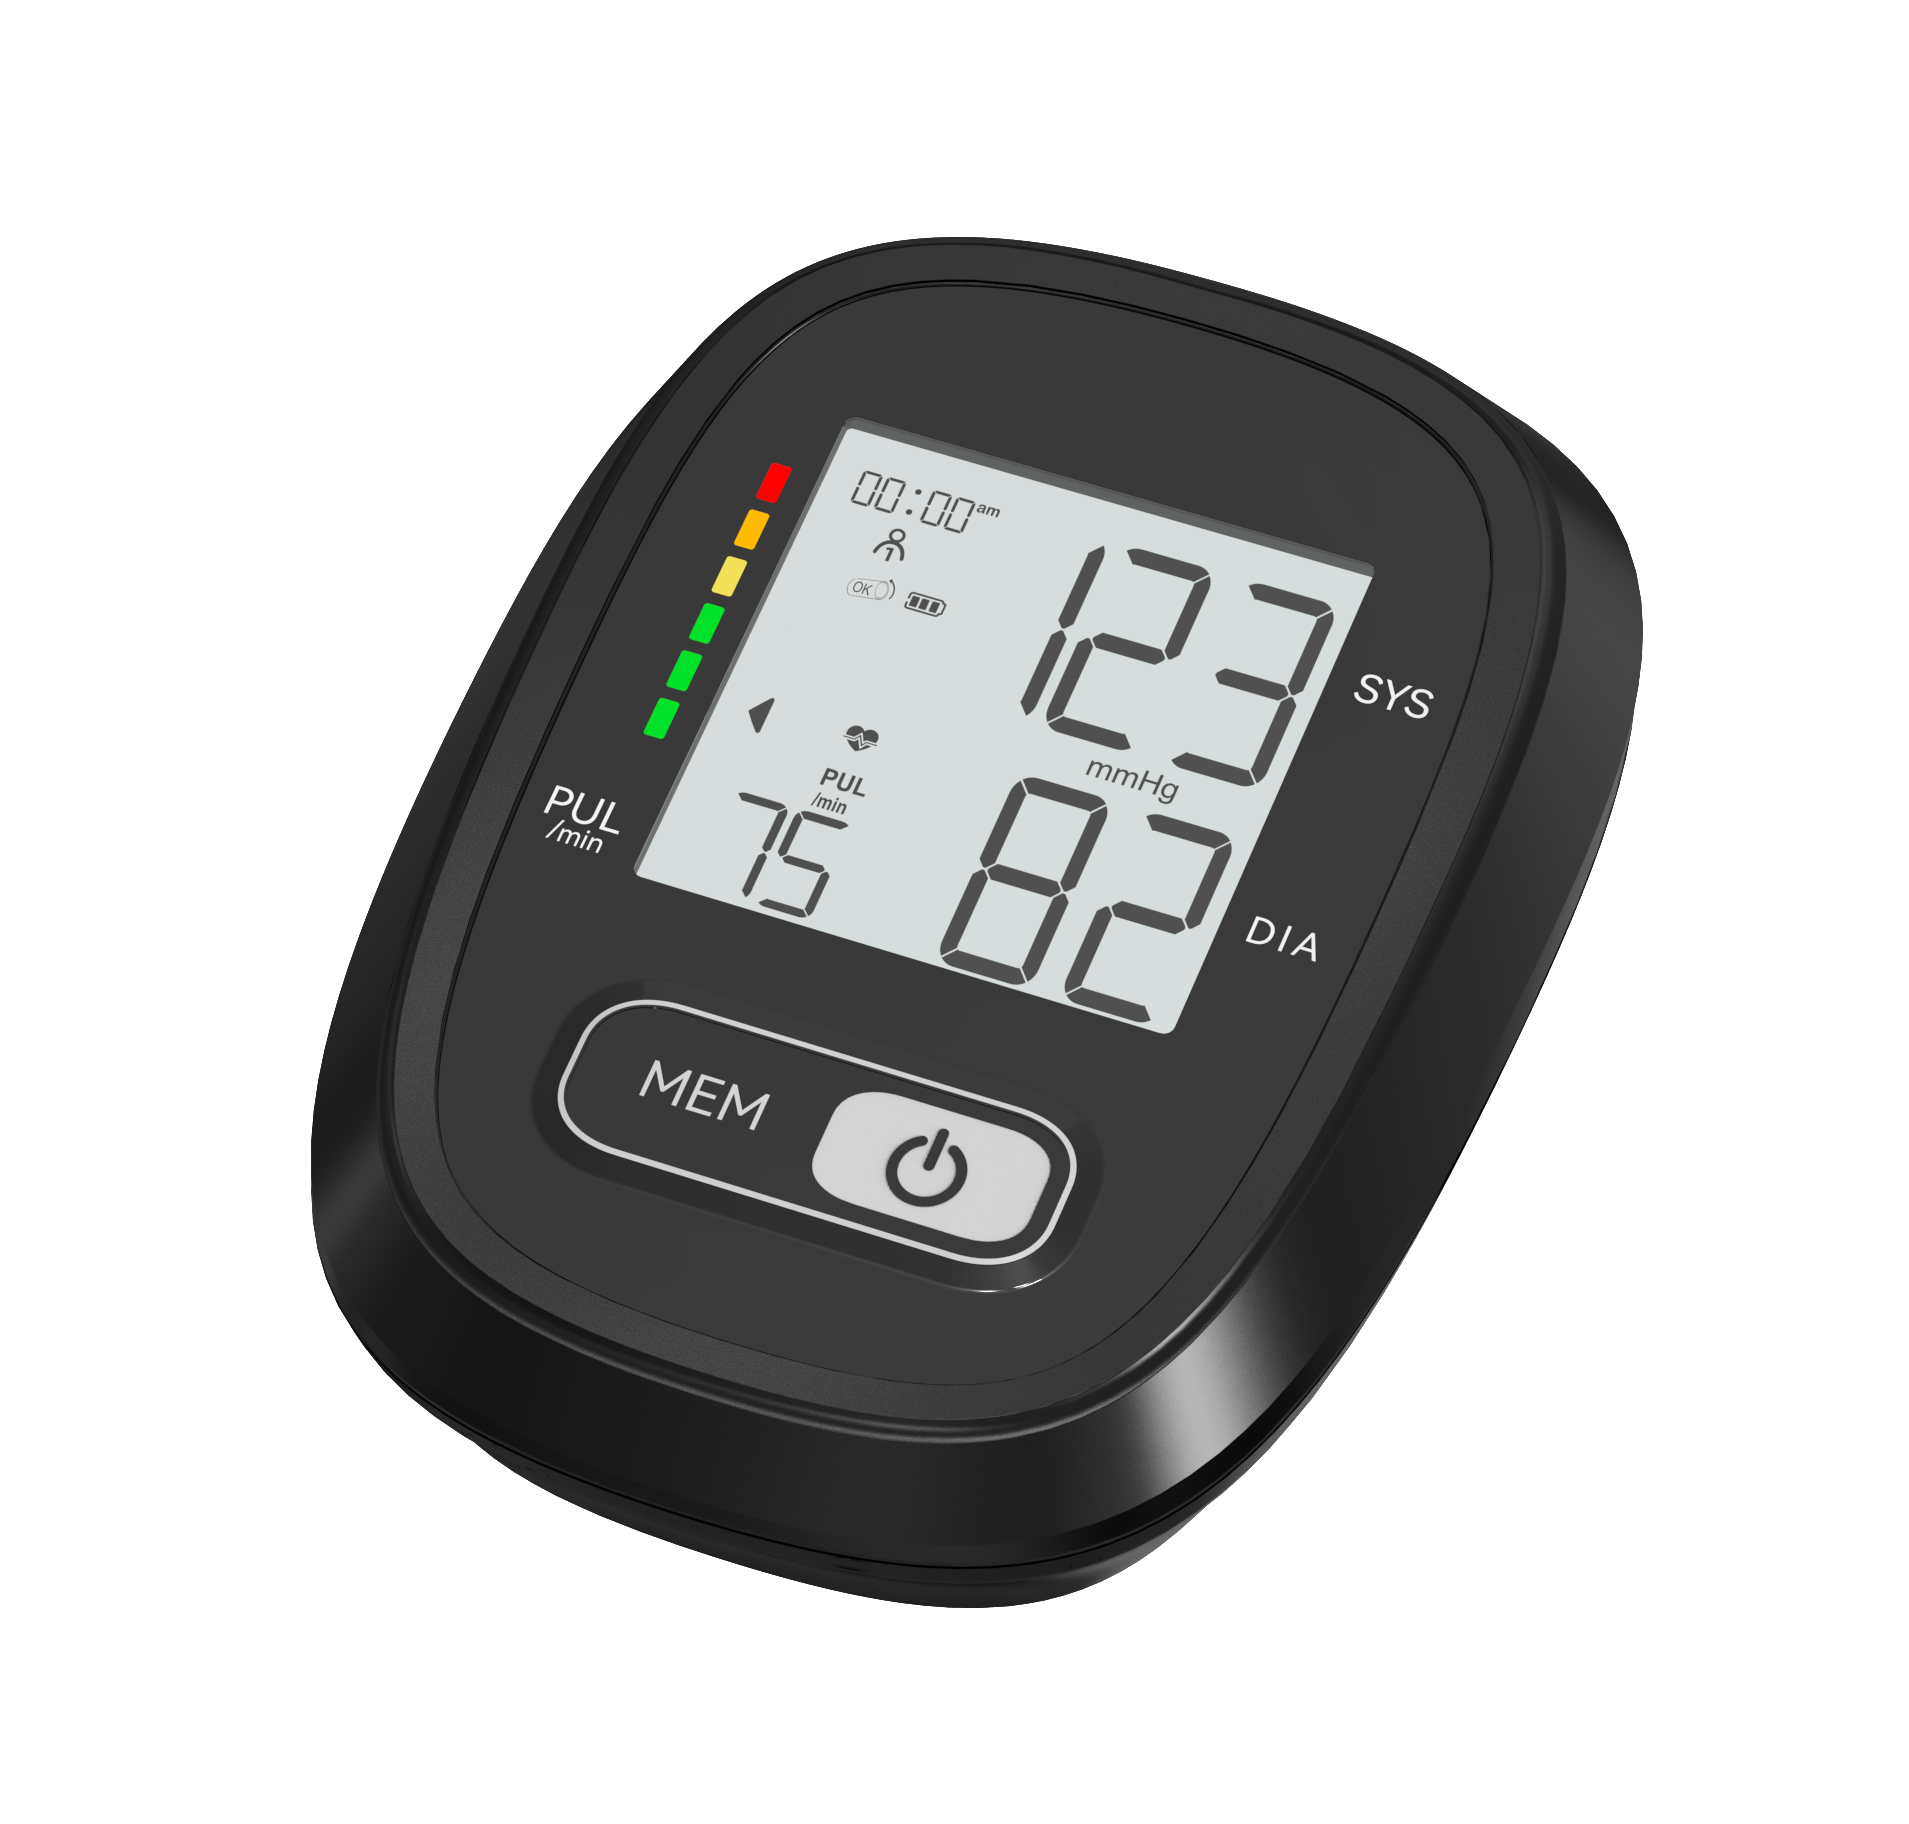 Presnosť lekársky digitálny prístroj na meranie krvného tlaku v hornej časti ramena